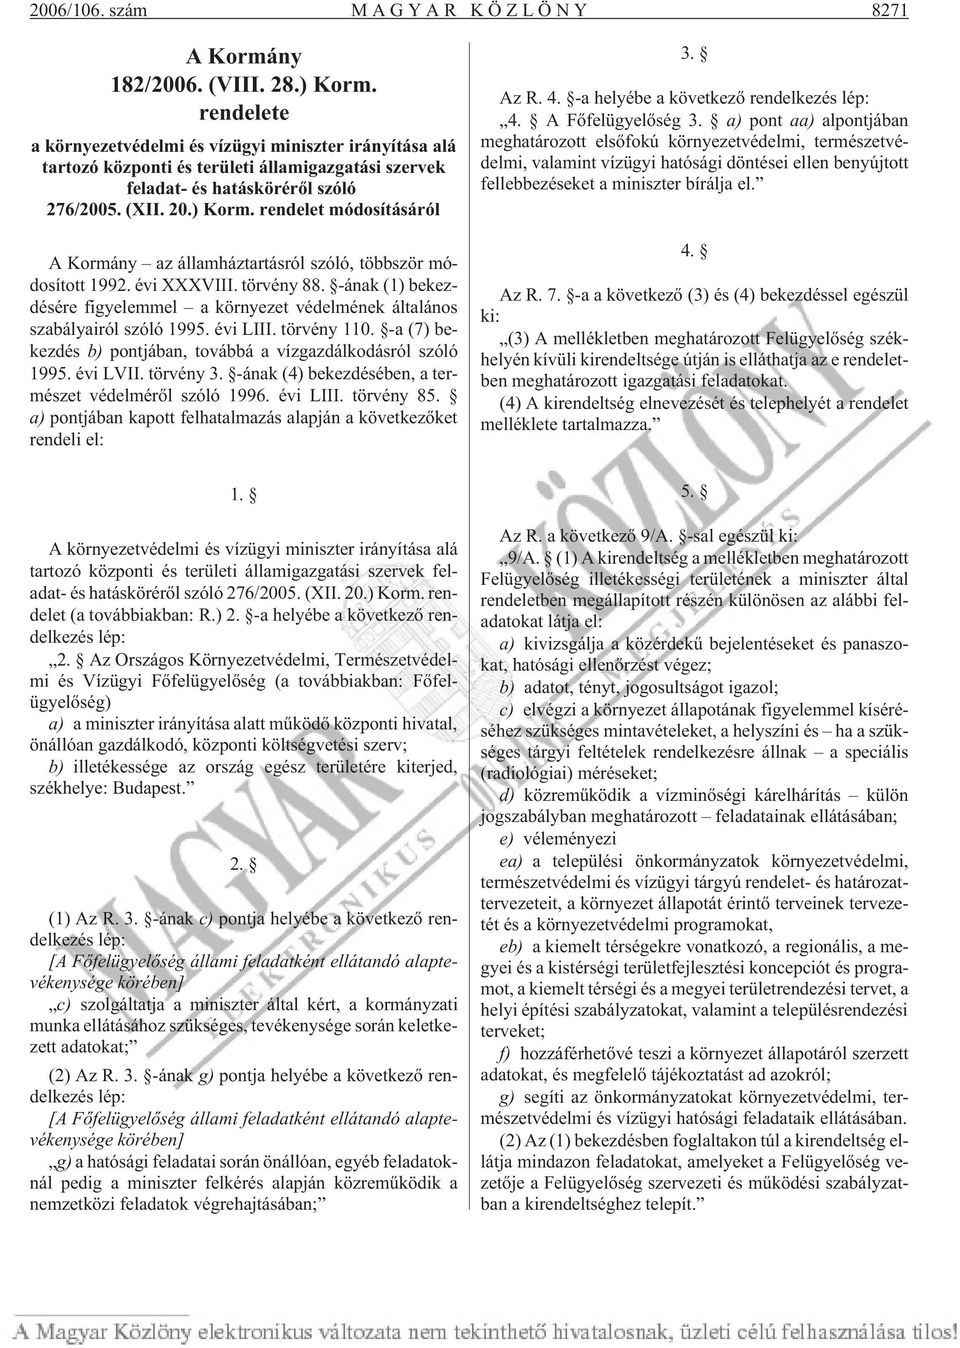 rendelet módosításáról A Kormány az államháztartásról szóló, többször módosított 1992. évi XXXVIII. törvény 88.